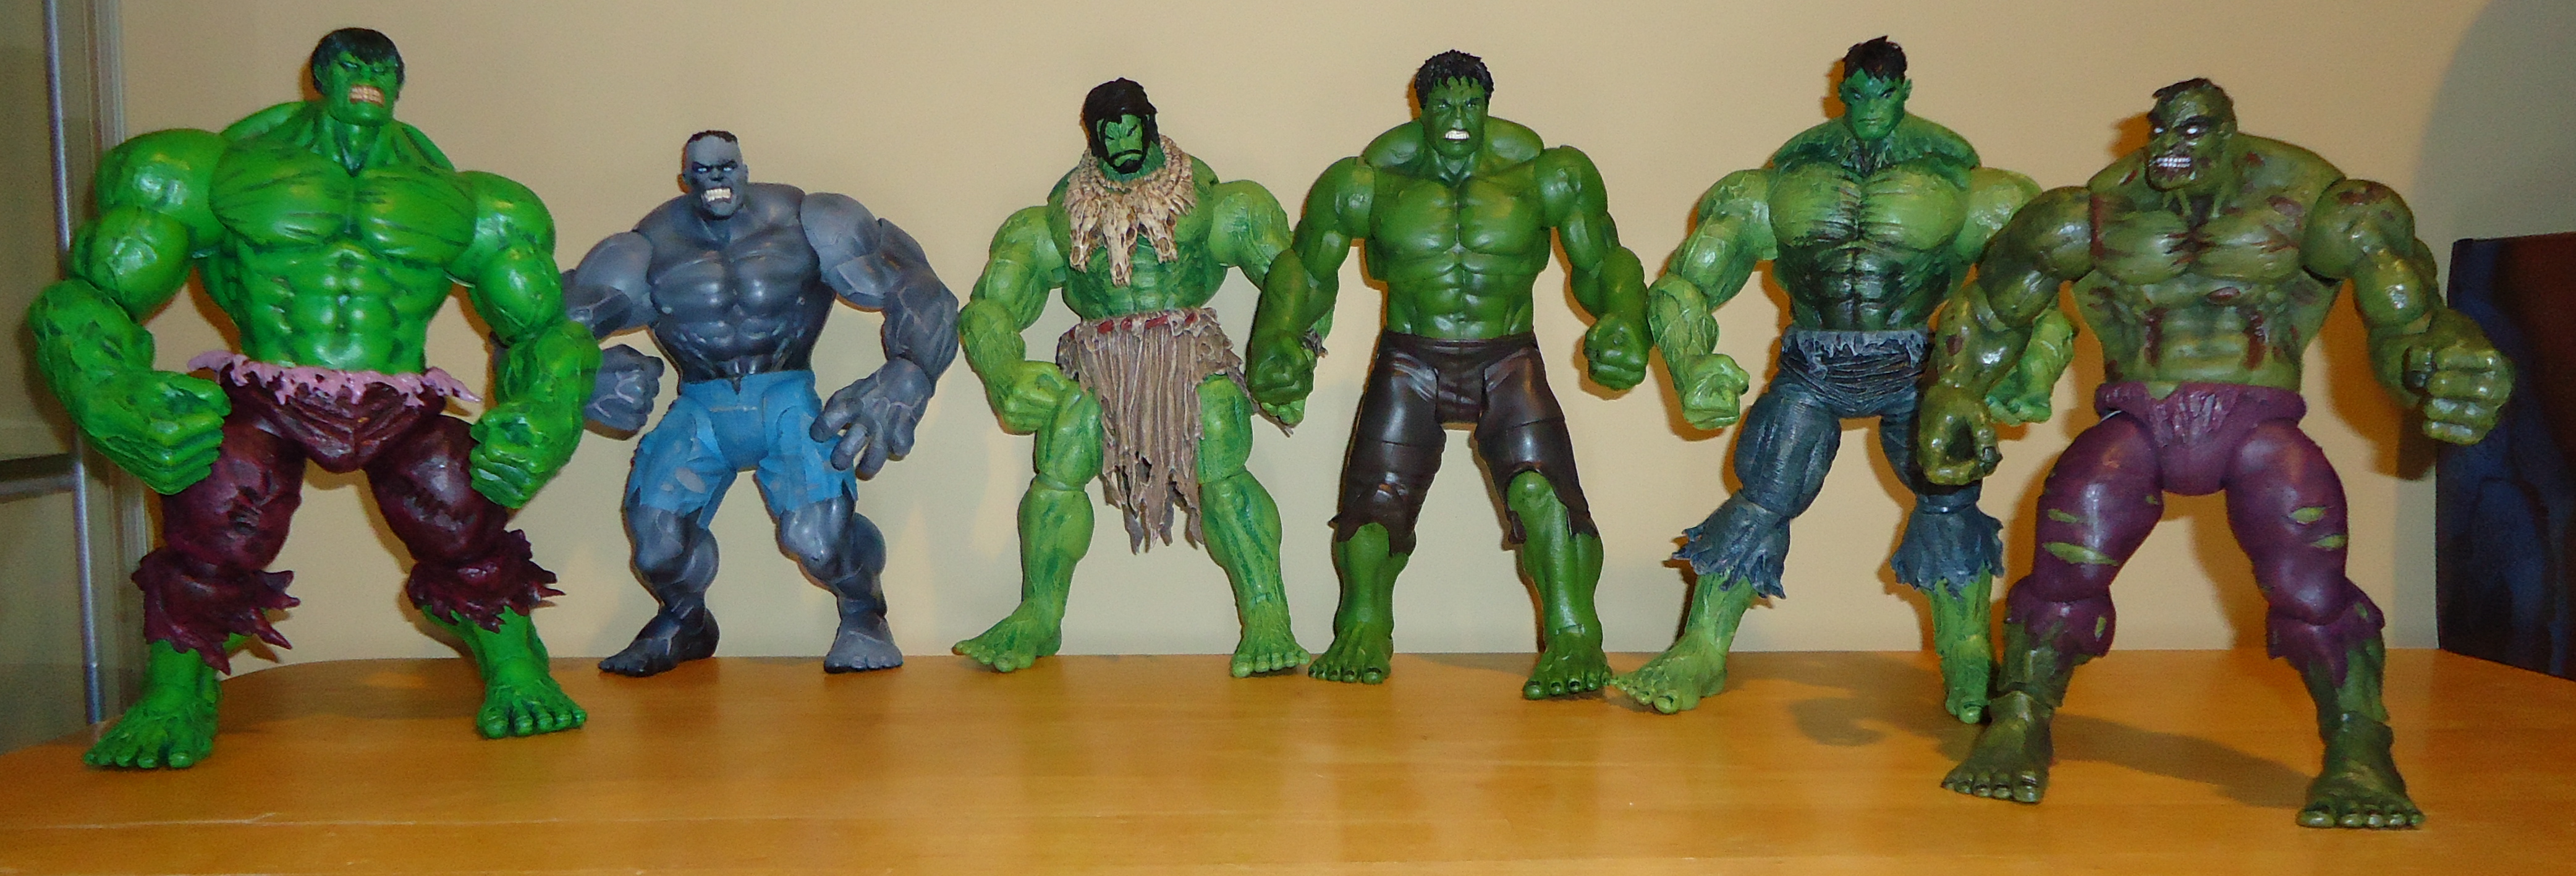 Пластилин халка. Ultimate Hulk Marvel select. Халк из пластилина. Фигурки Марвел Селект Халк. Халк из пластилина для детей 4-5 лет.